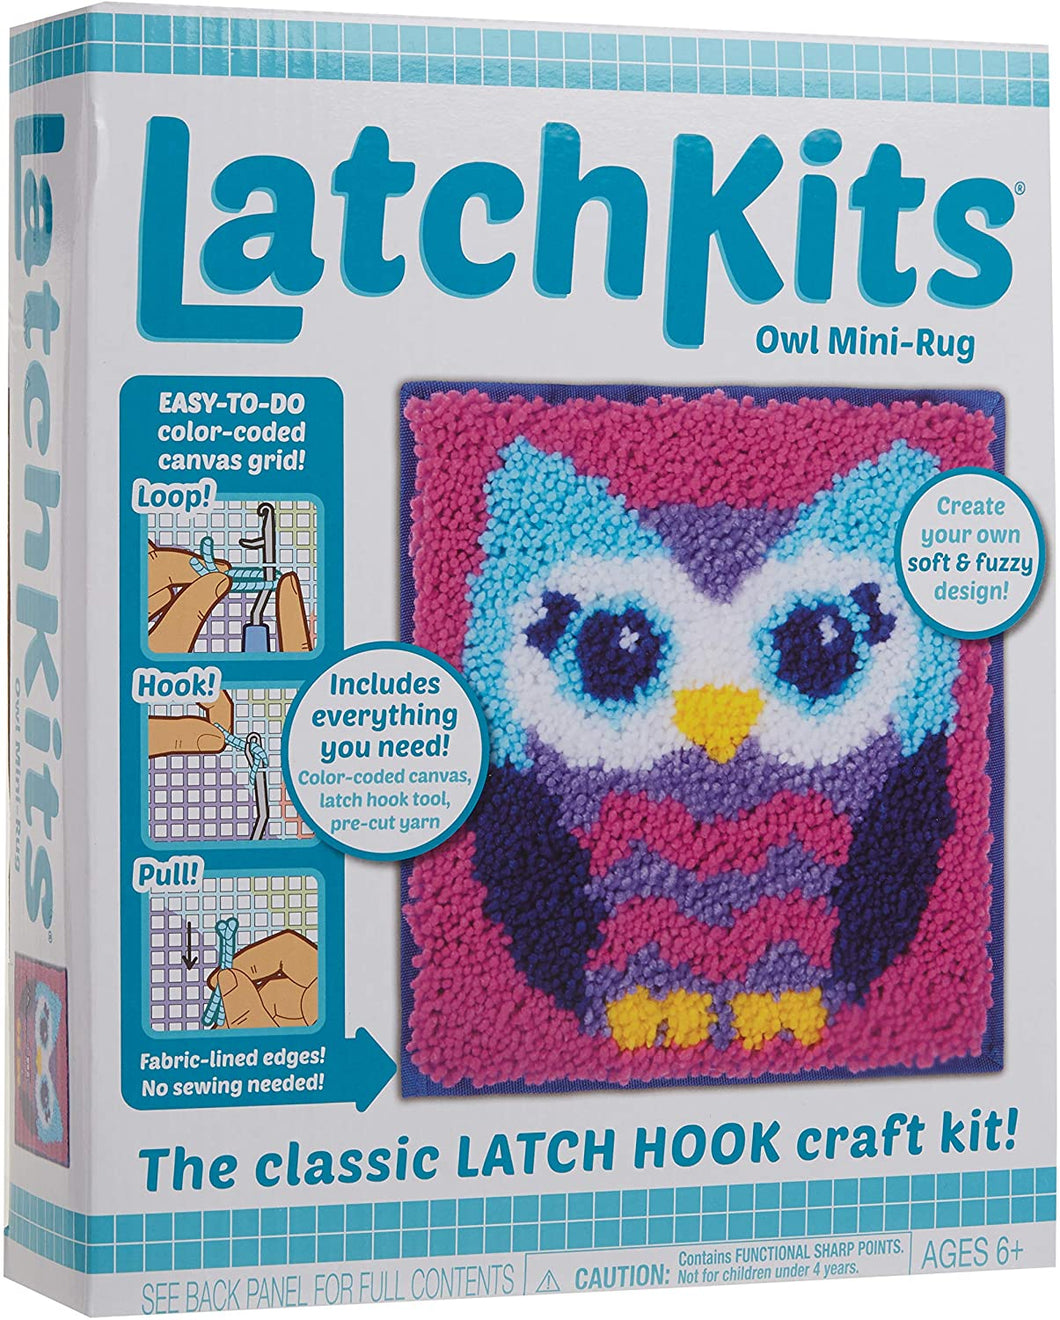 Latch kits Owl